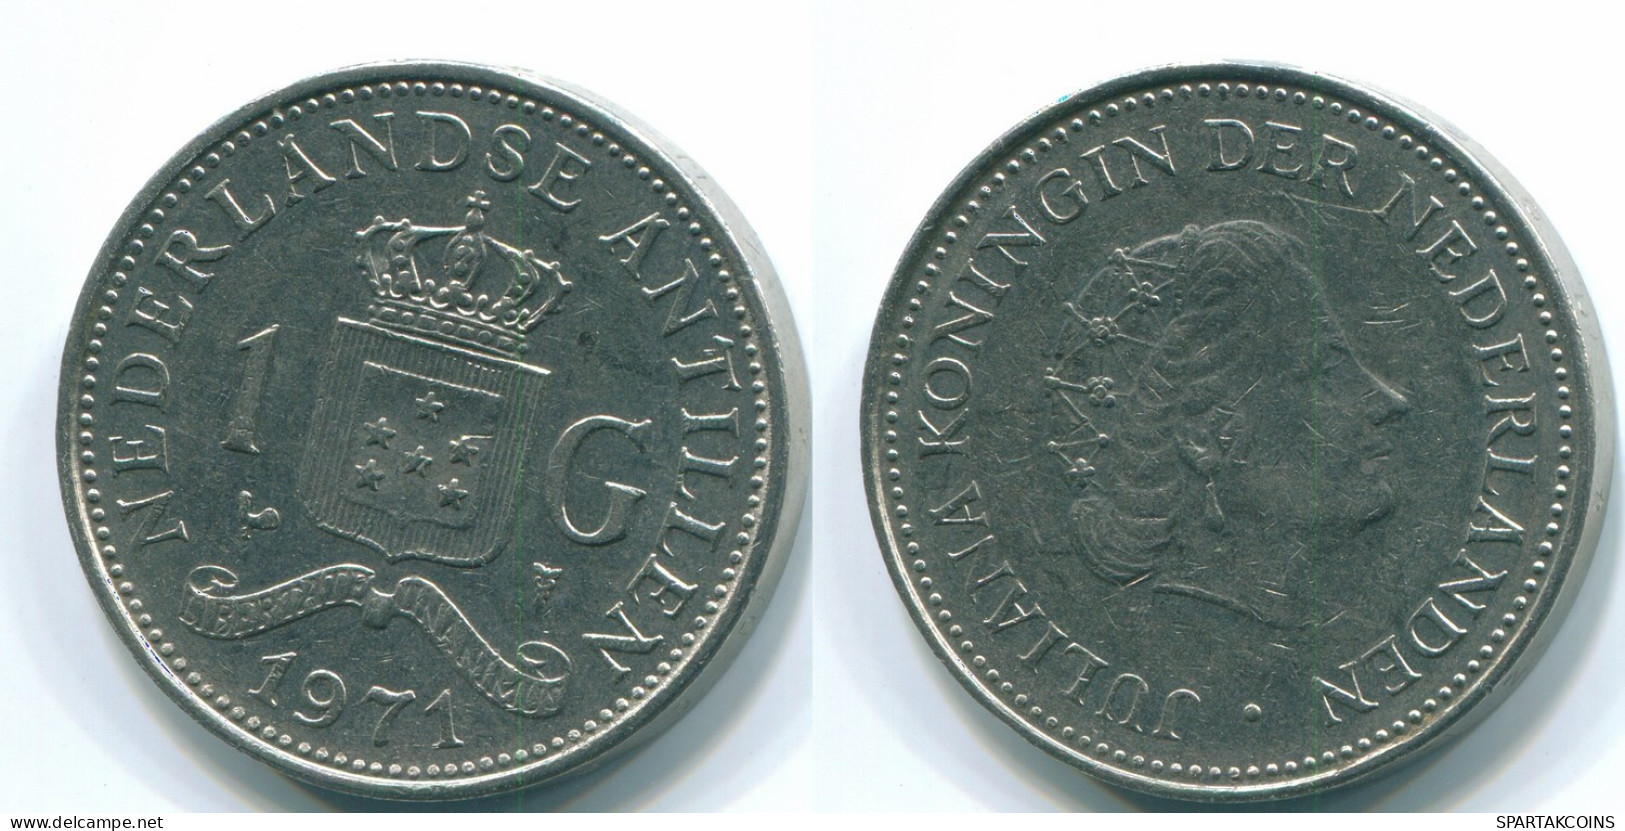 1 GULDEN 1971 NIEDERLÄNDISCHE ANTILLEN Nickel Koloniale Münze #S12025.D.A - Netherlands Antilles